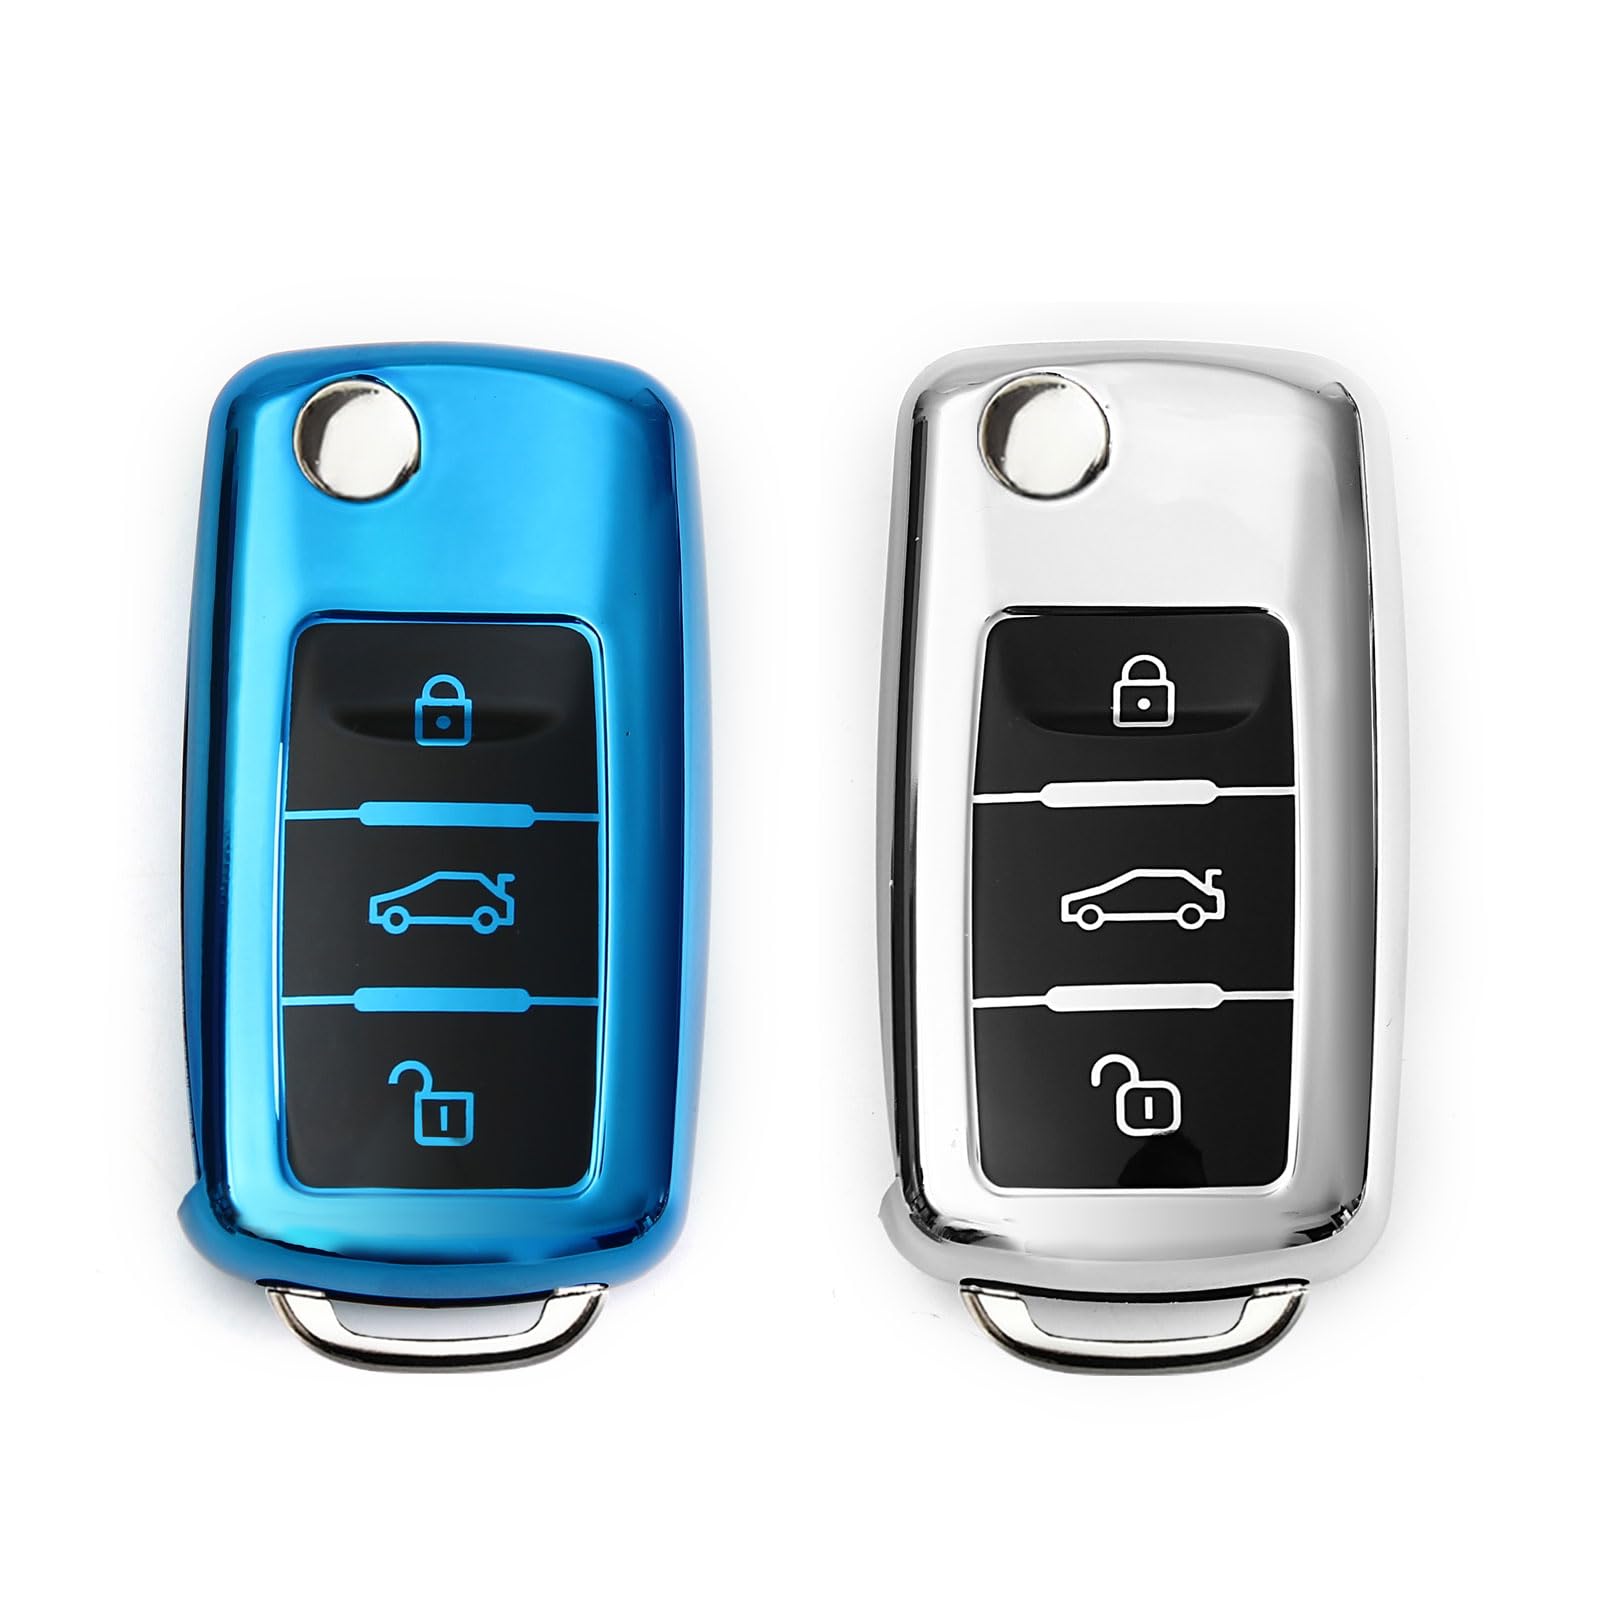 2 Stück Autoschlüssel Hülle, Schlüsselbox,Autoschlüssel Schutzhülle kompatibel mit VW Golf 7、Polo、Tiguan、Skoda 3-Tasten Schlüsselhülle (Blau + Silber) von Mythosurge